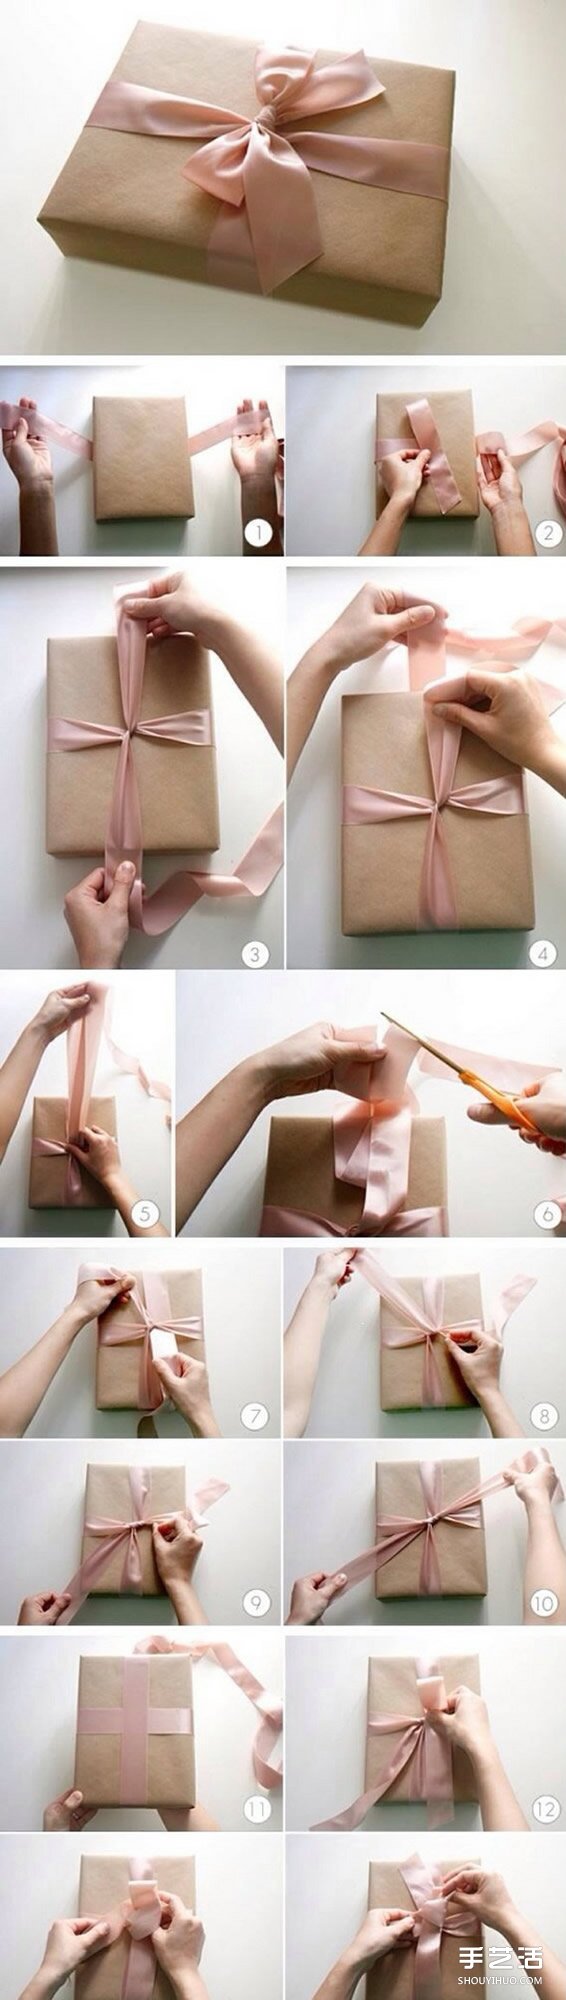 能够表达心意的礼物包装的做法手工DIY图解